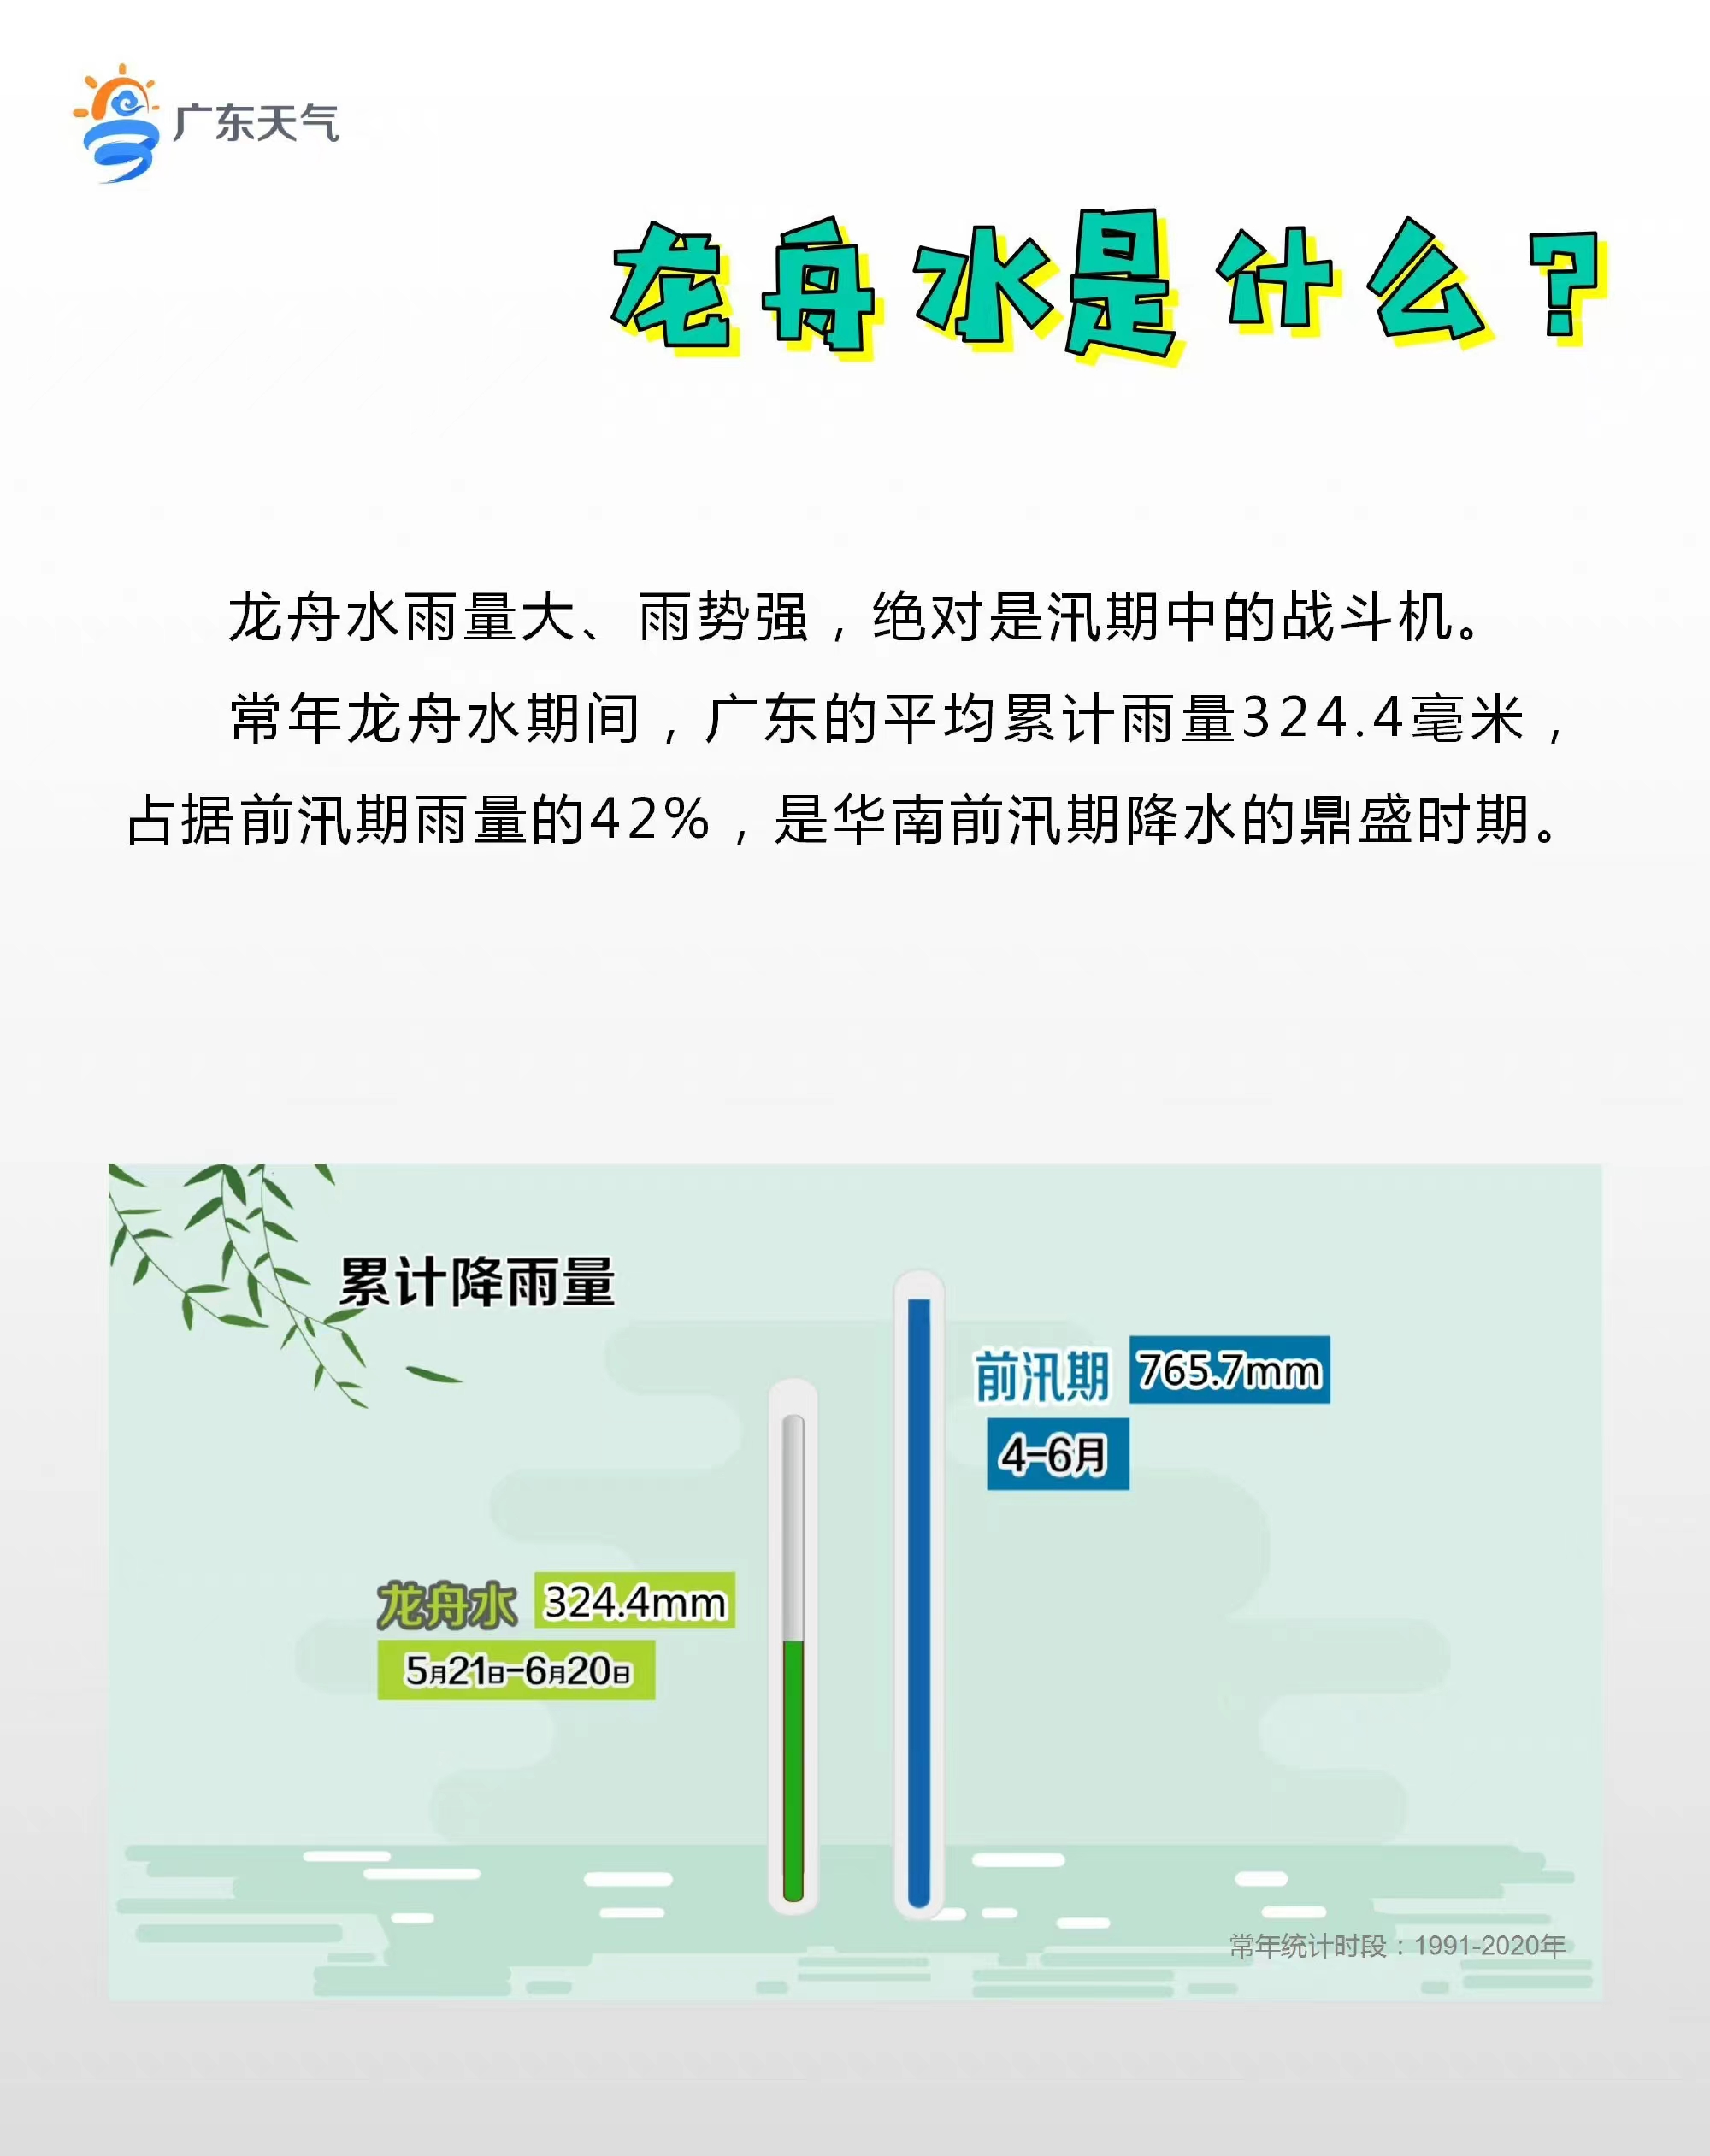 广东迎“龙舟水”首轮强降雨 省三防办部署防御工作